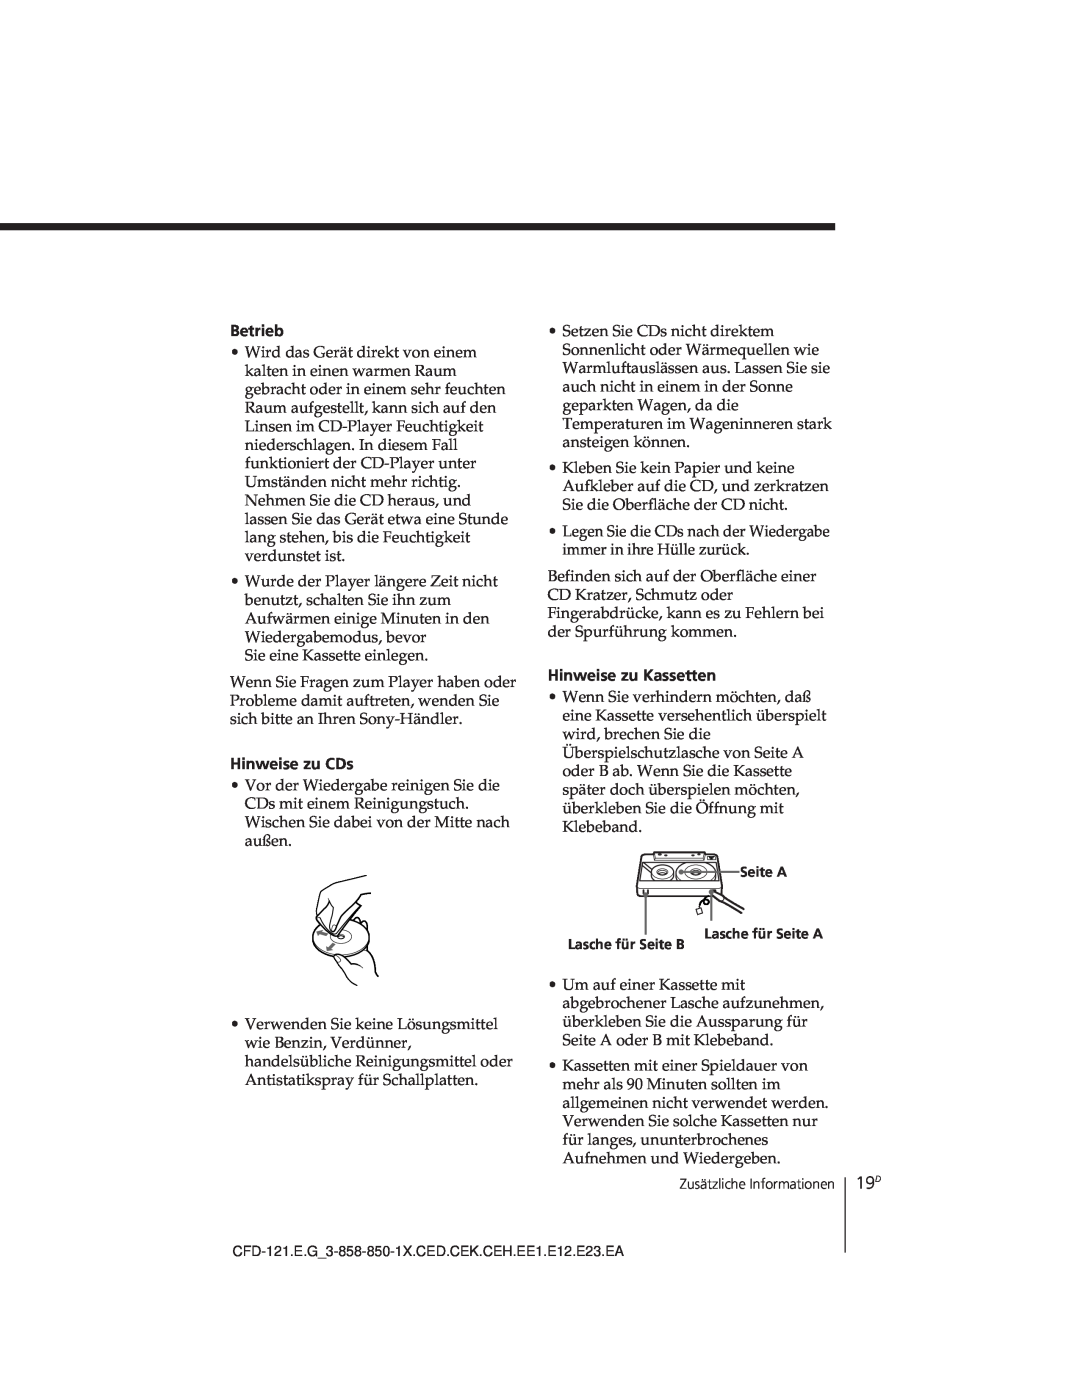 Sony CFD-121 operating instructions Betrieb, Hinweise zu CDs, Hinweise zu Kassetten 